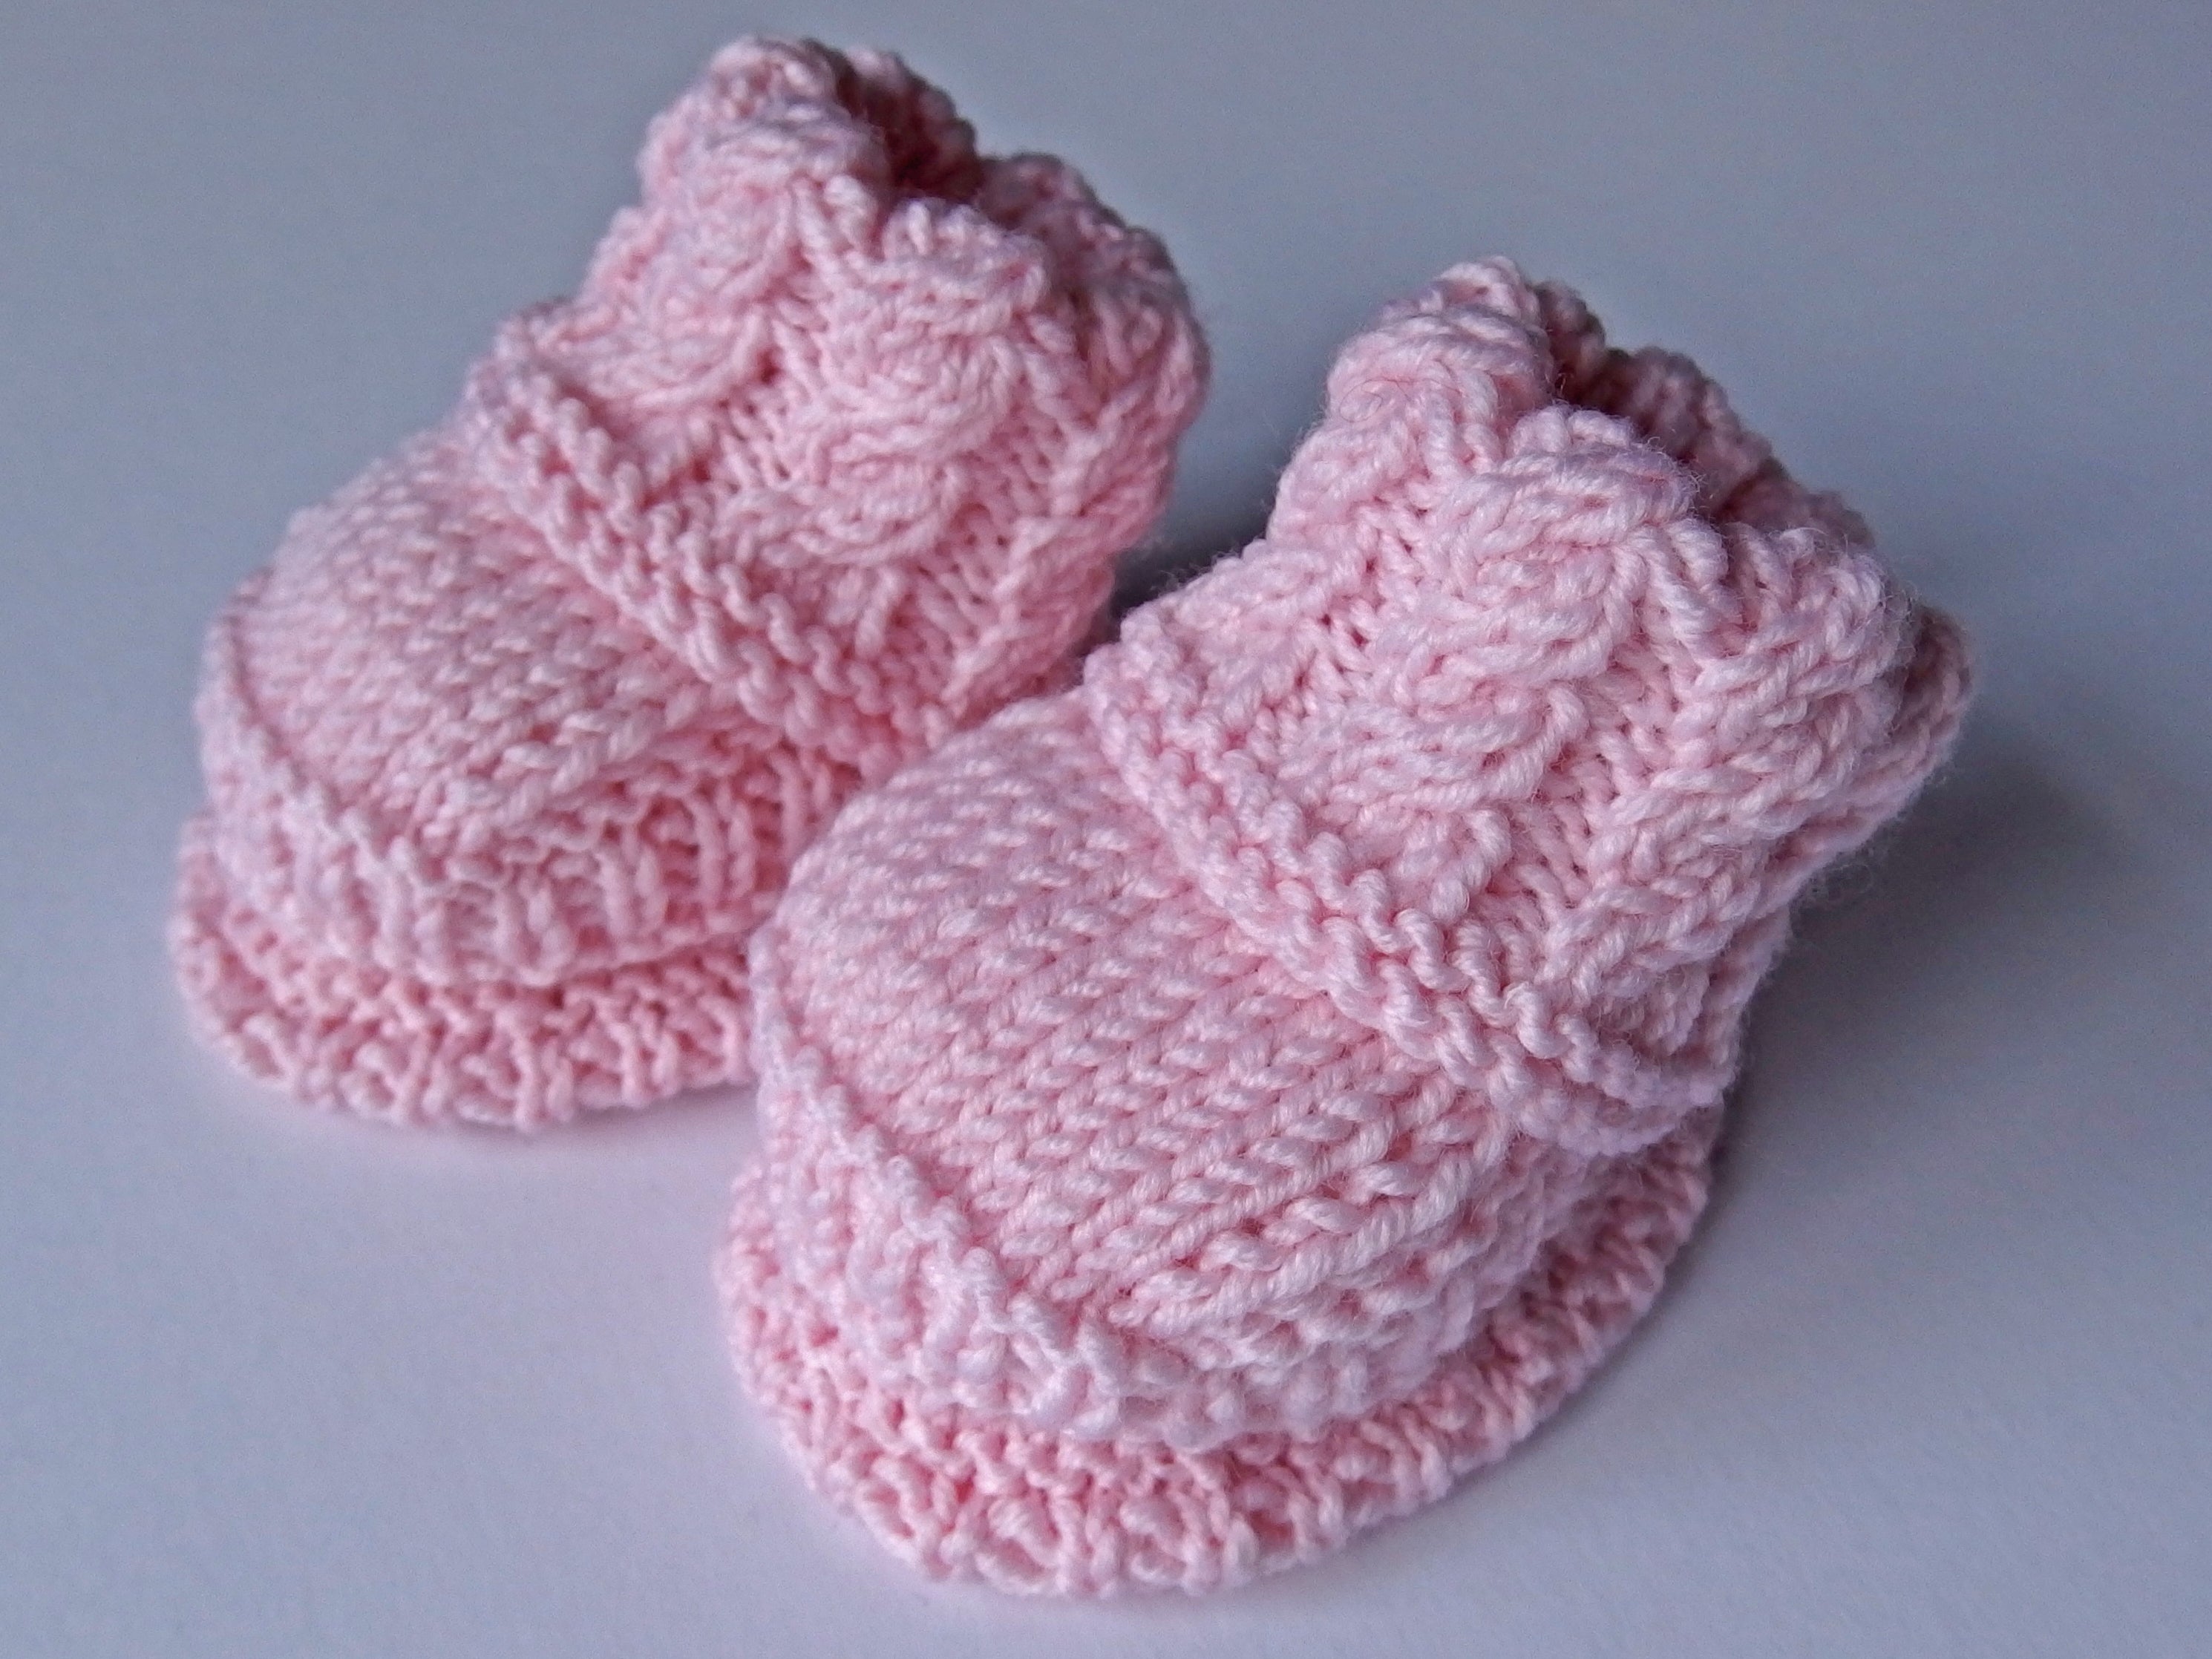 Baby Booties - made using 100% baby merino wool: pink